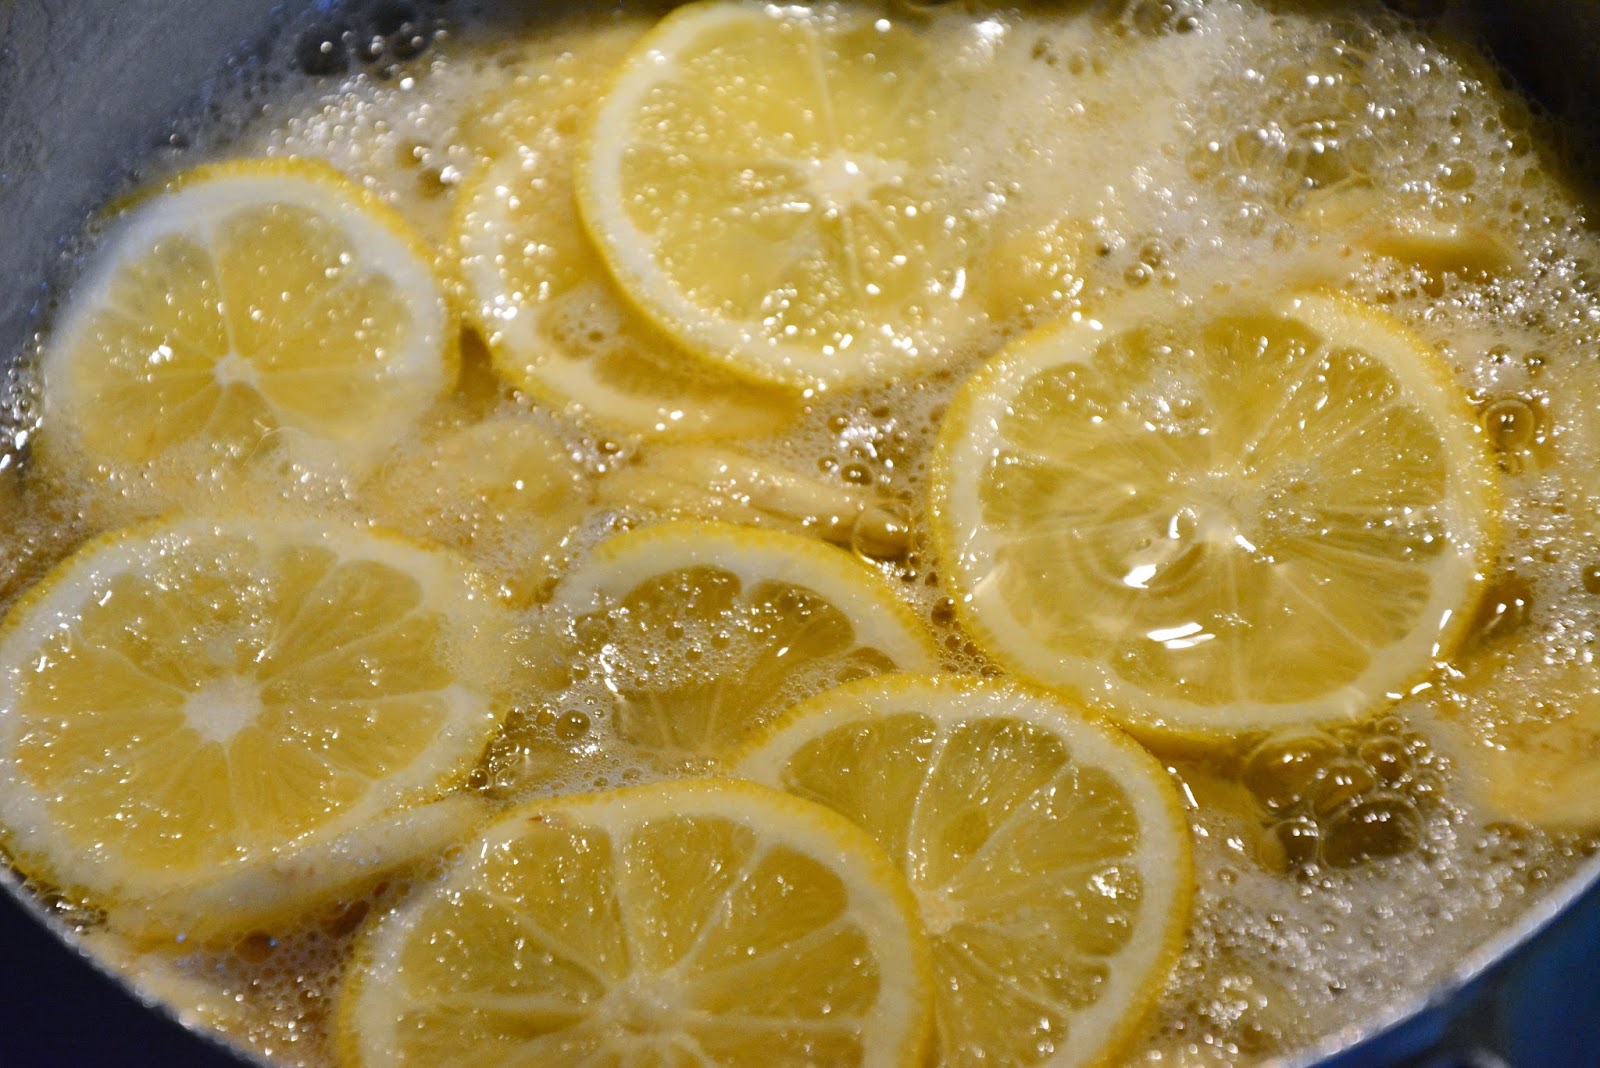 Жареные лимоны